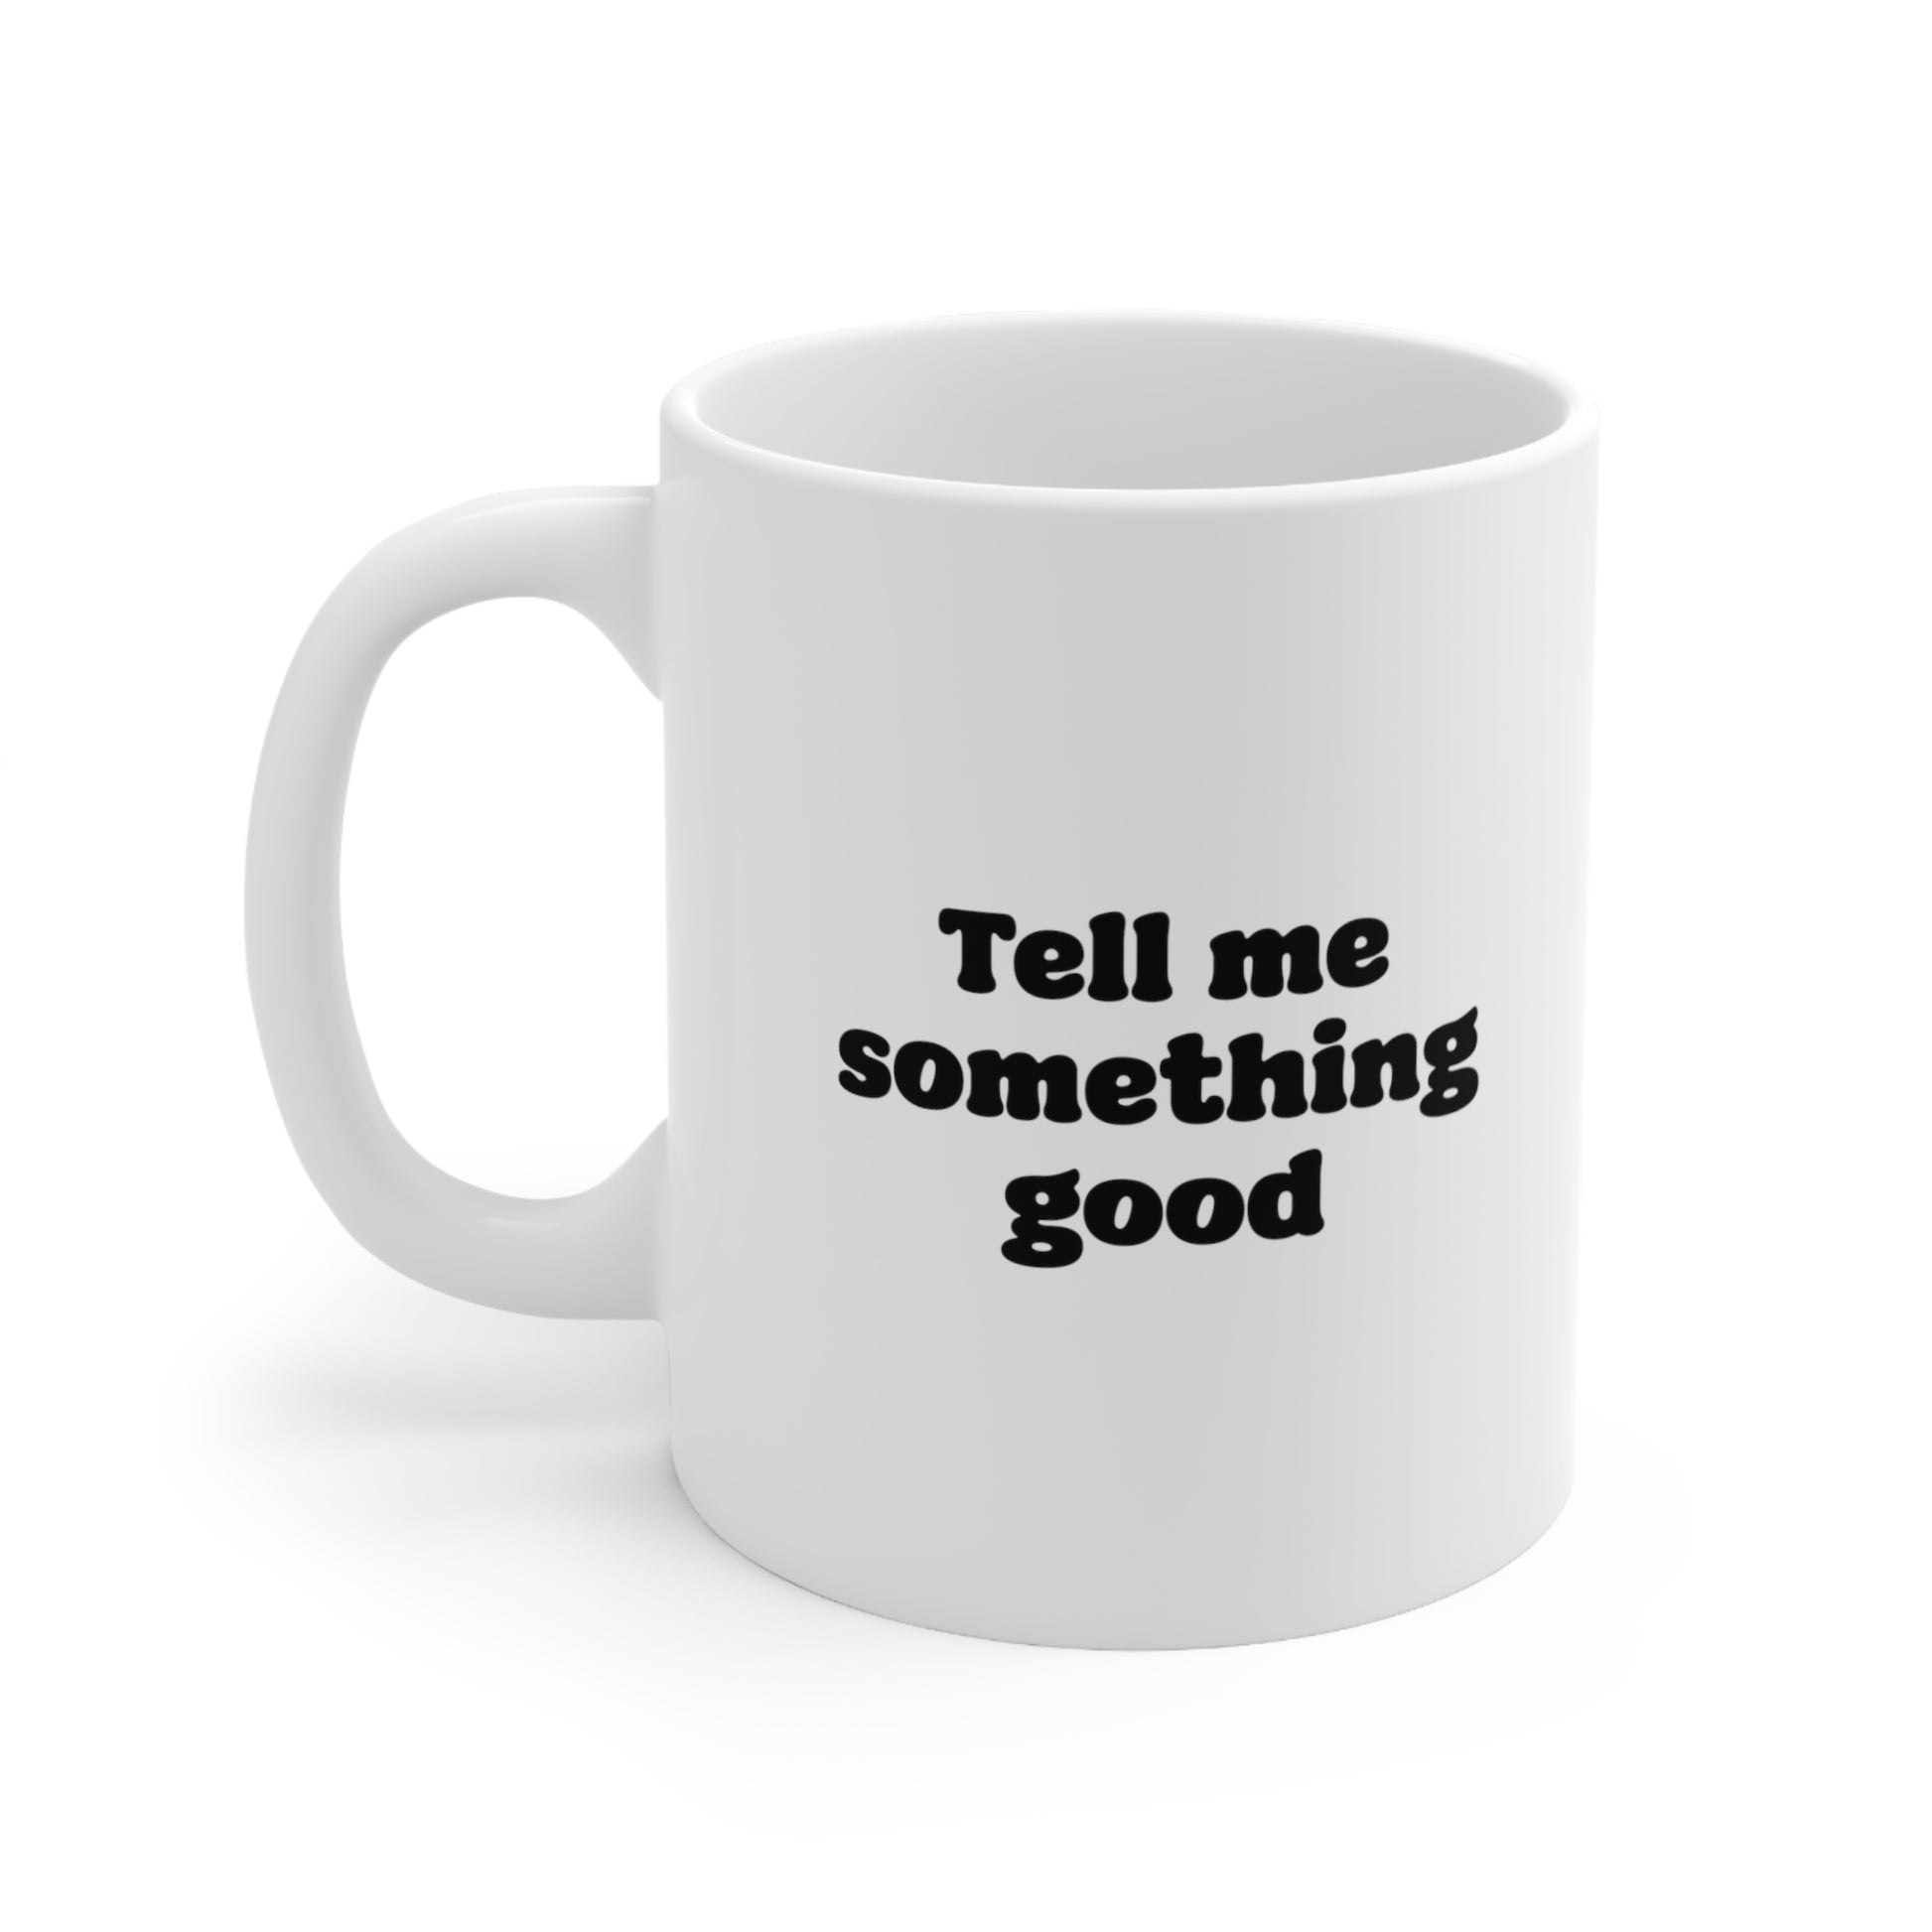 Tell me something good Coffee Mug